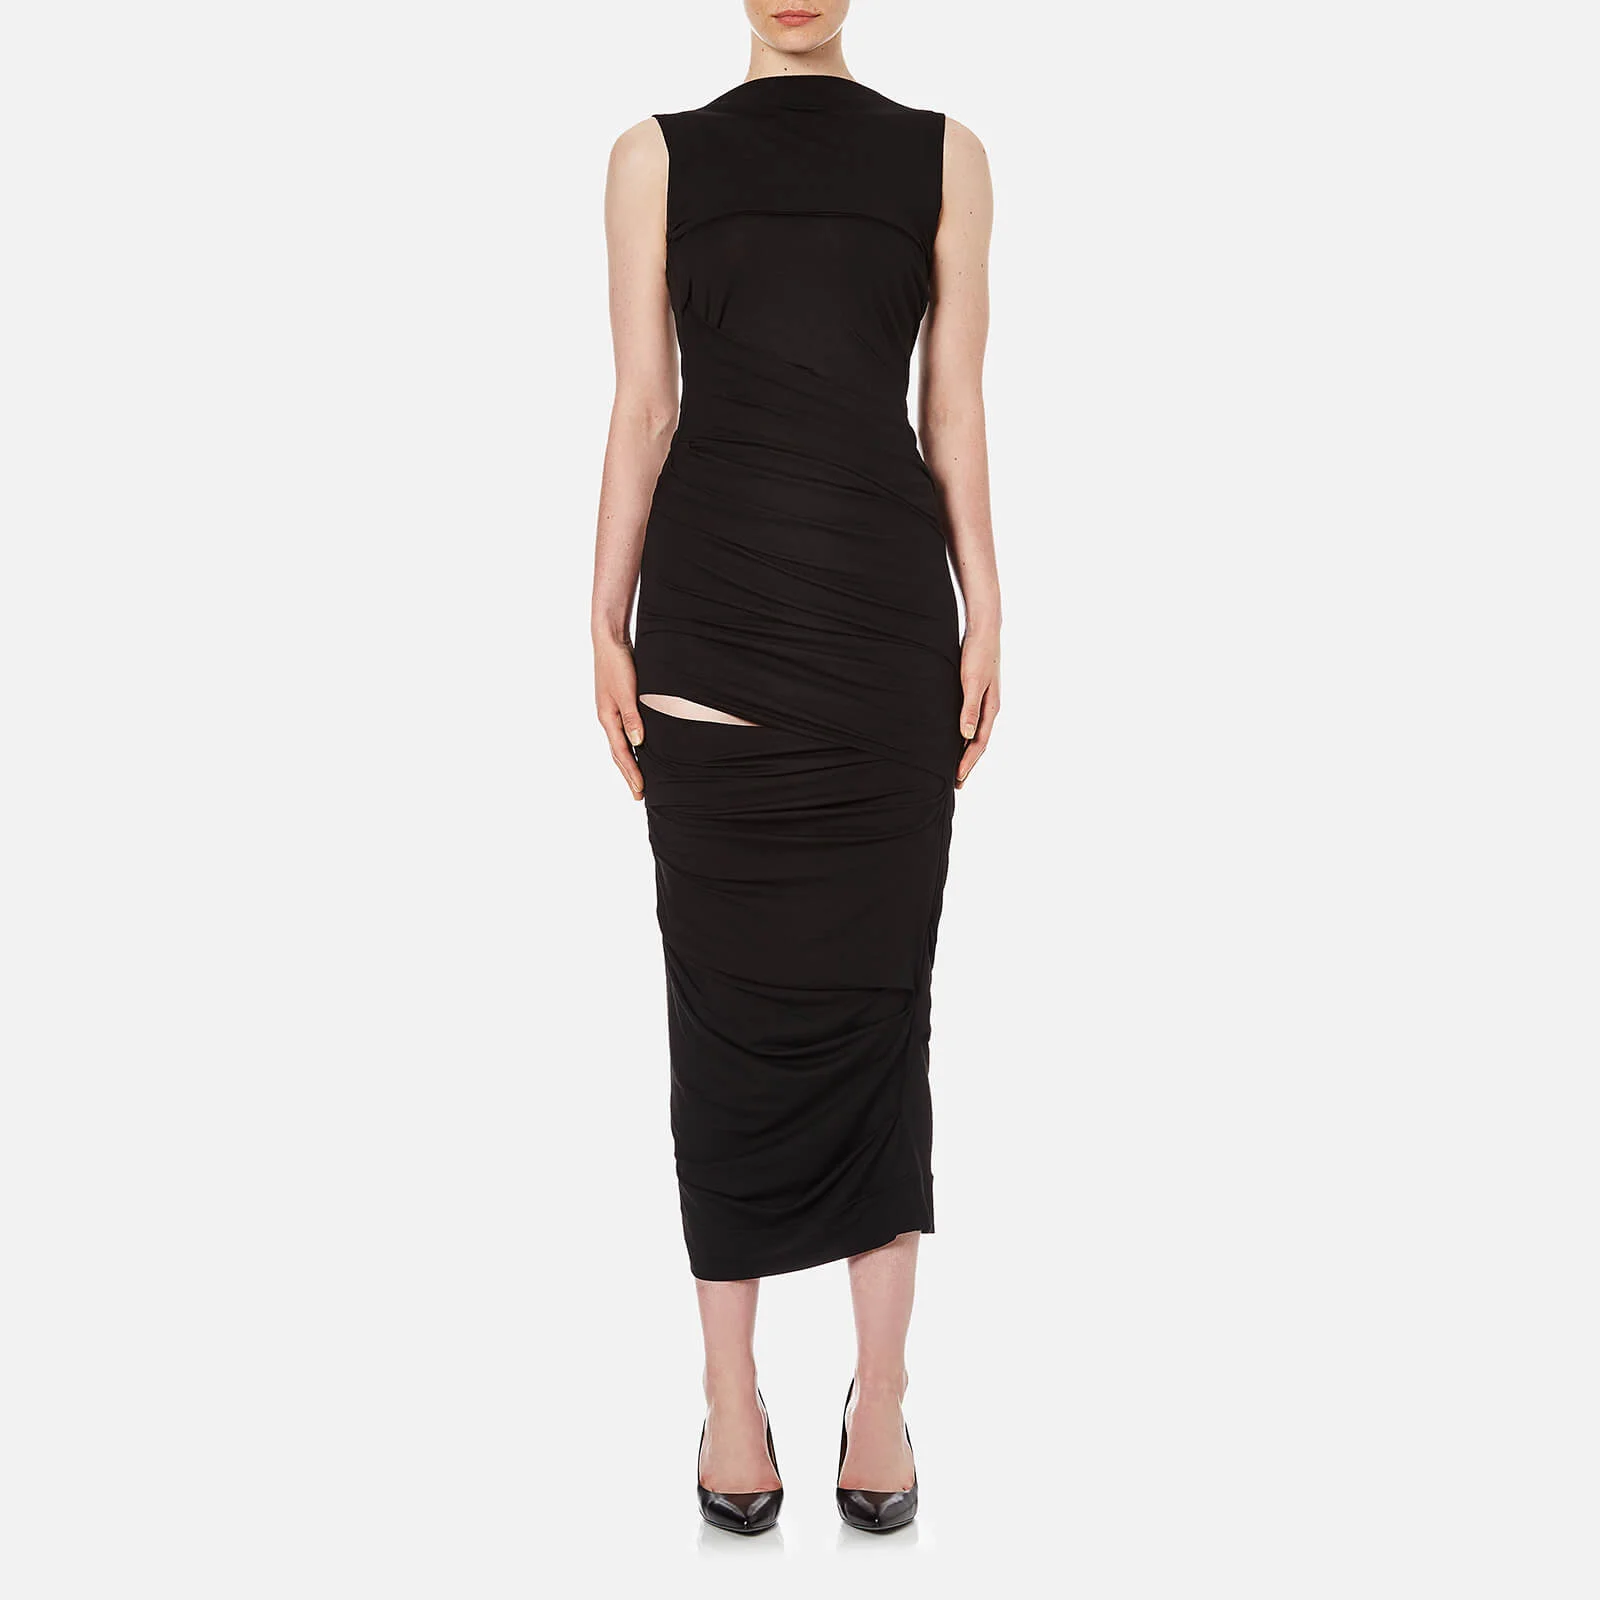 Vivienne Westwood Anglomania Women's Plain Vaduz Slash Dress - Black Image 1